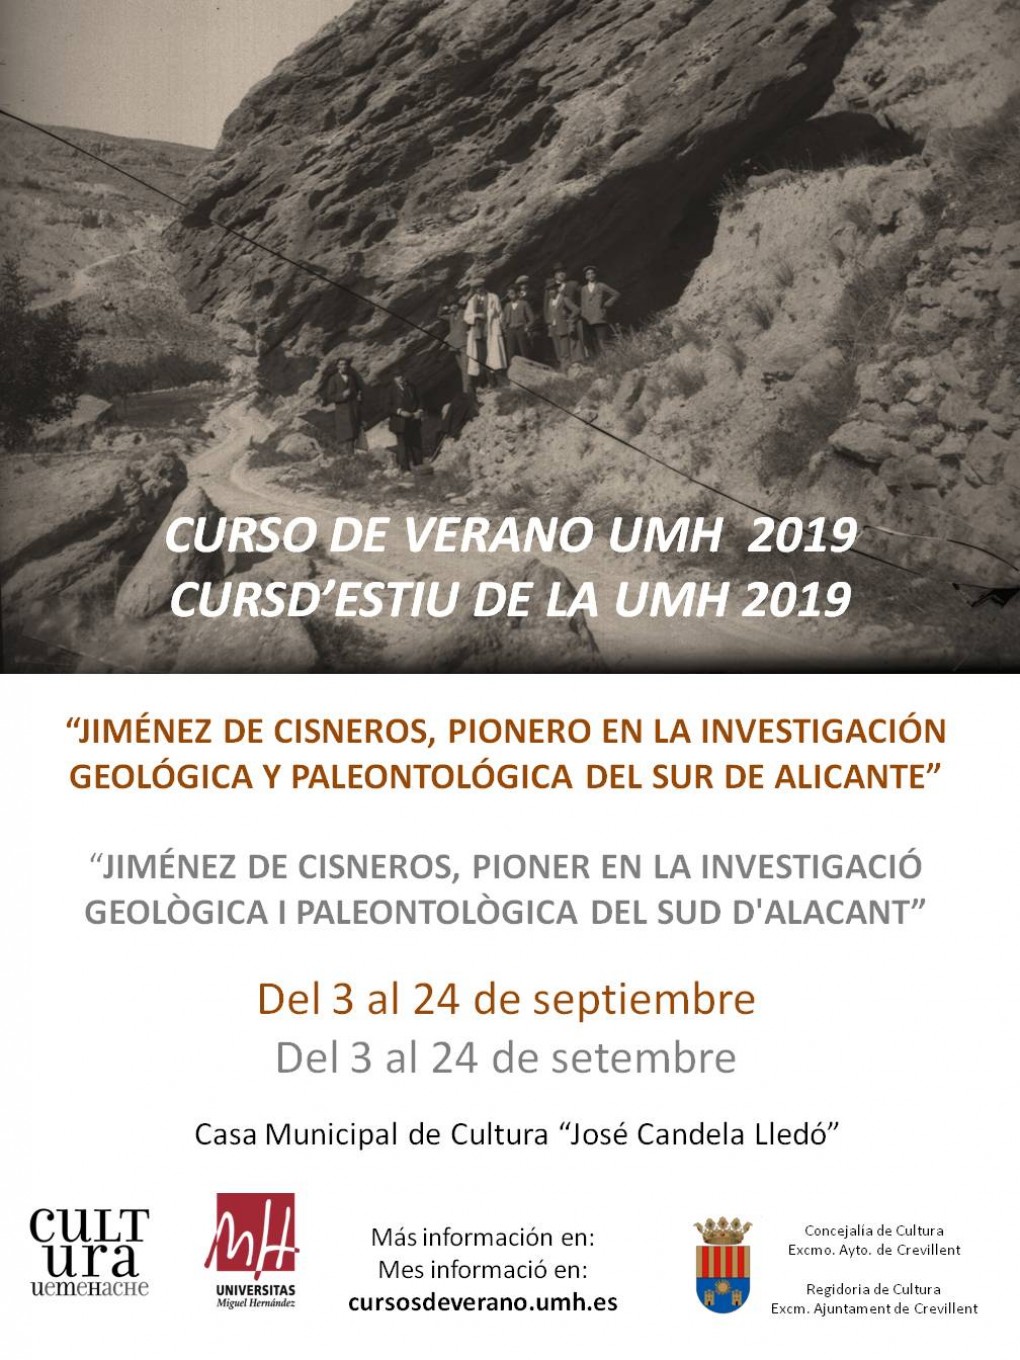 Curso de verano de la UMH 2019 de la sede Crevillent (Casa Municipal de Cultura José Candela Lledó)